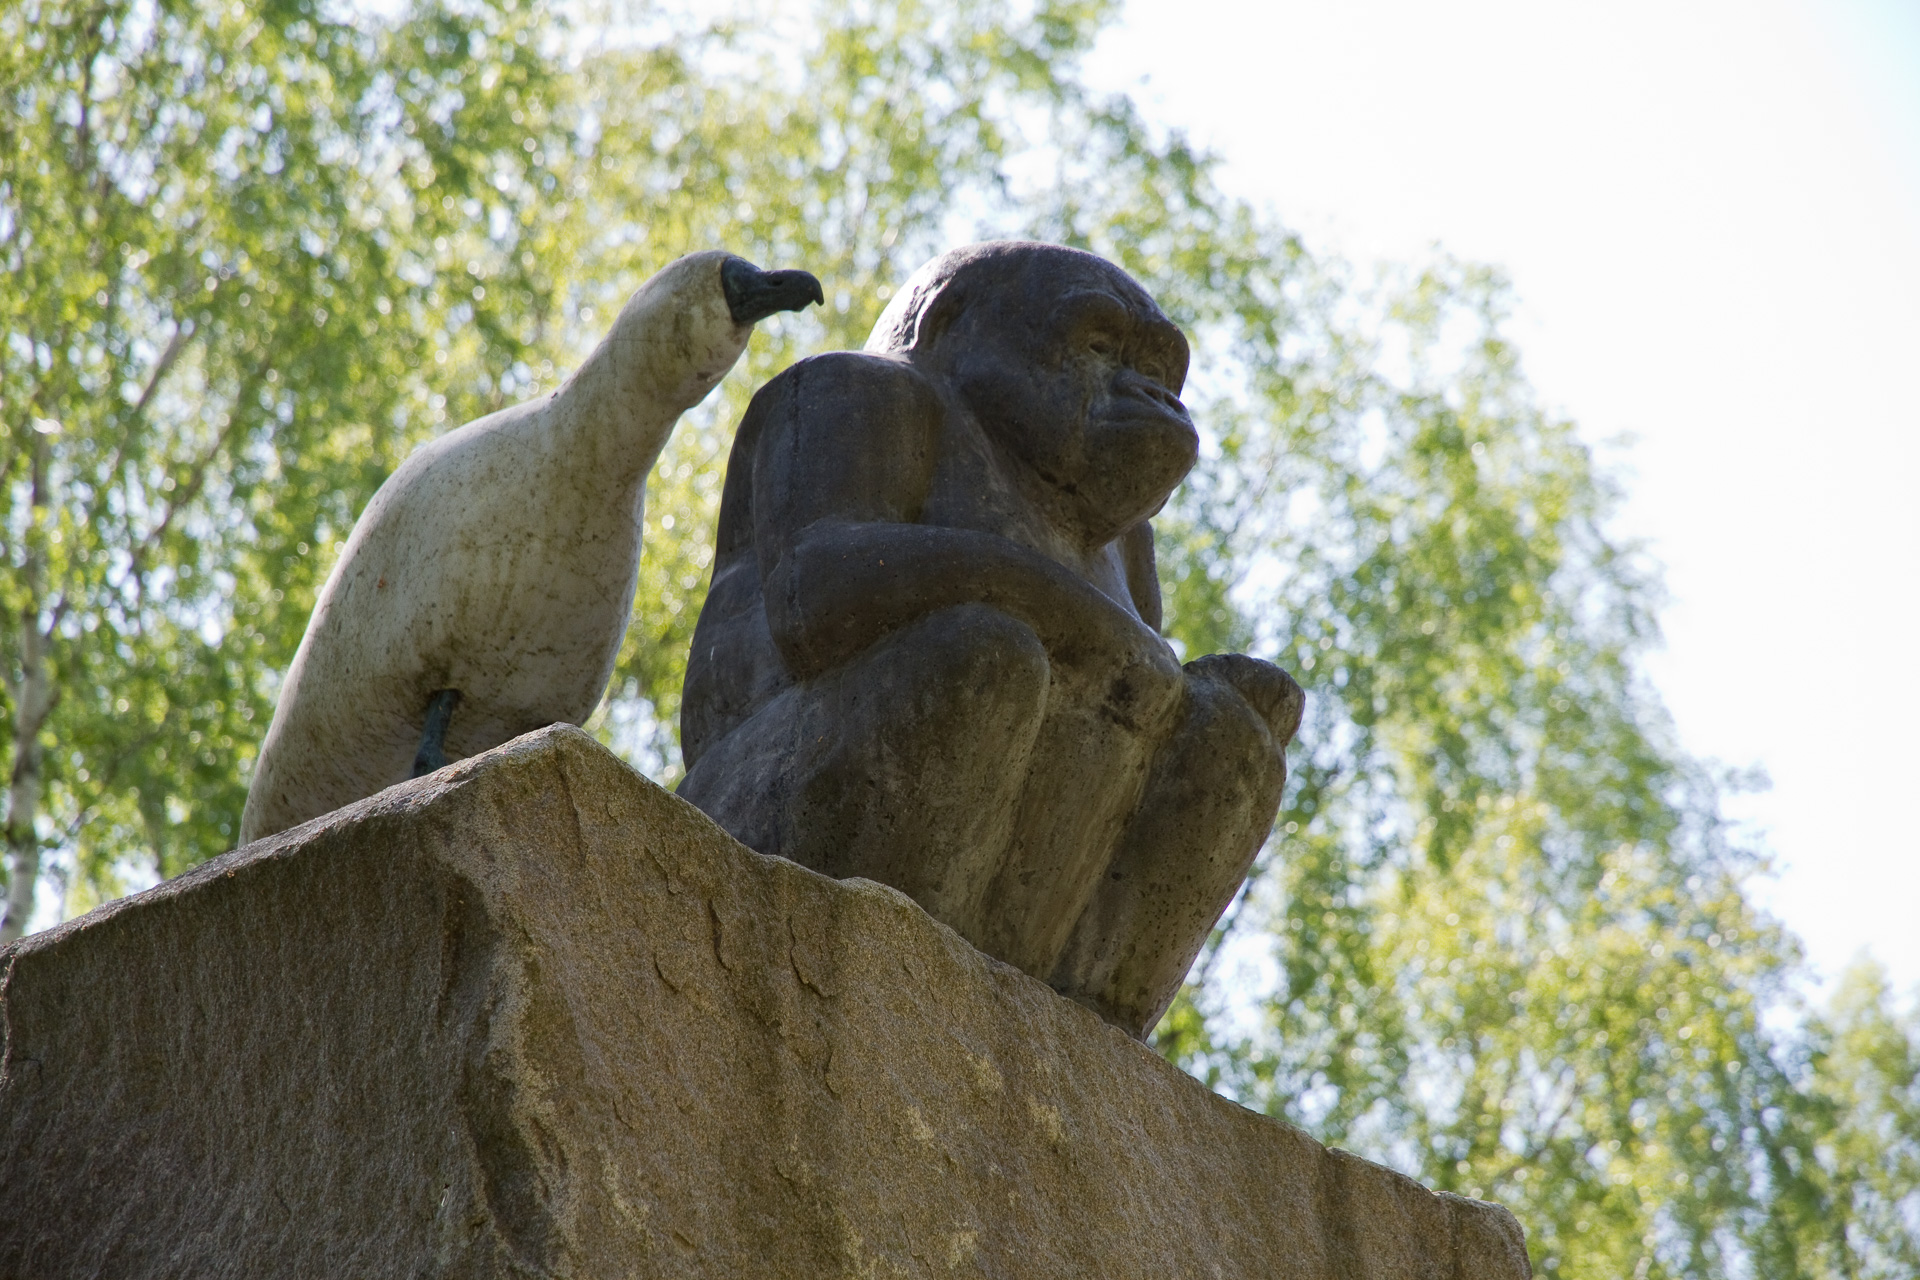 På en hög sockel av granit sitter en liten gorilla på huk med de långa armarna i knät och tittar ut över parken. Bakom den på samma sockel står två trutar uppflugna. Trutarna